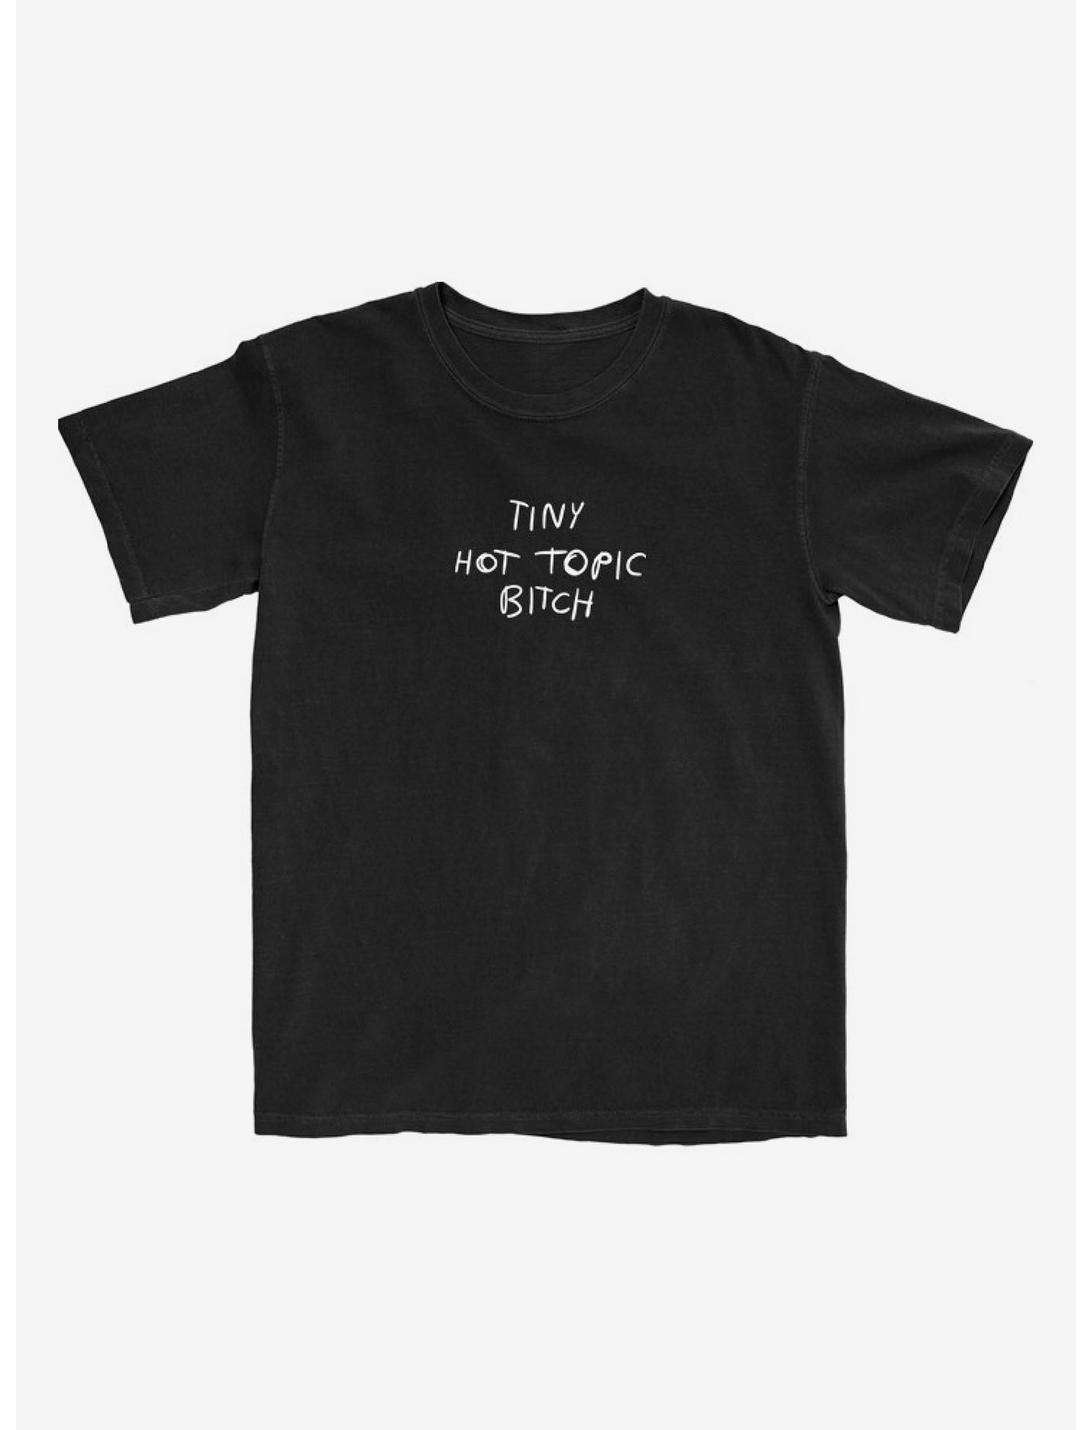 Hayley Williams Tiny Hot Topic Bitch T-Shirt, BLACK, hi-res